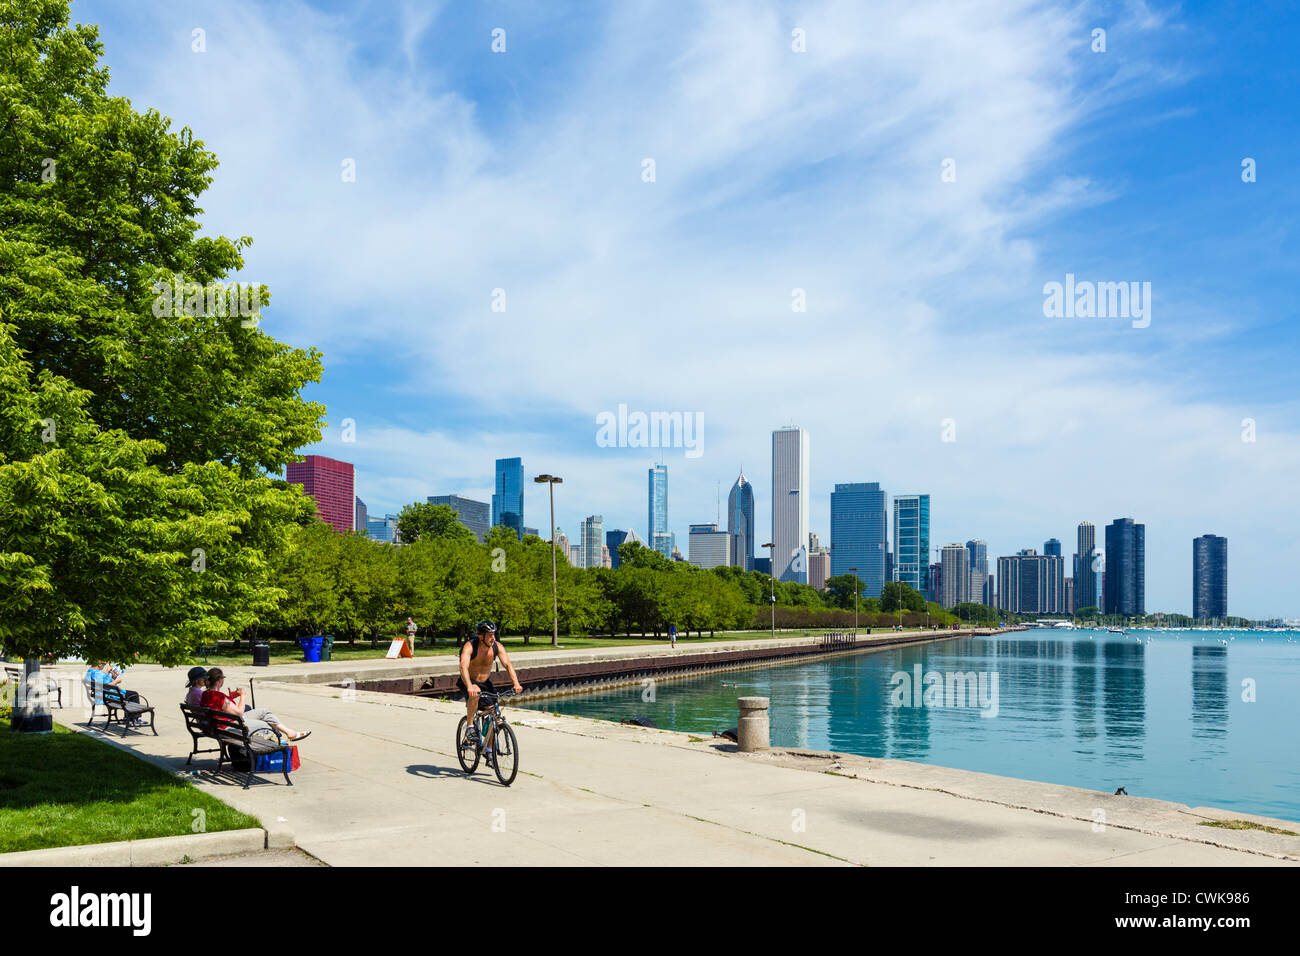 Lo skyline della città dal lungolago di Grant Park, Chicago, Illinois, Stati Uniti d'America Foto Stock